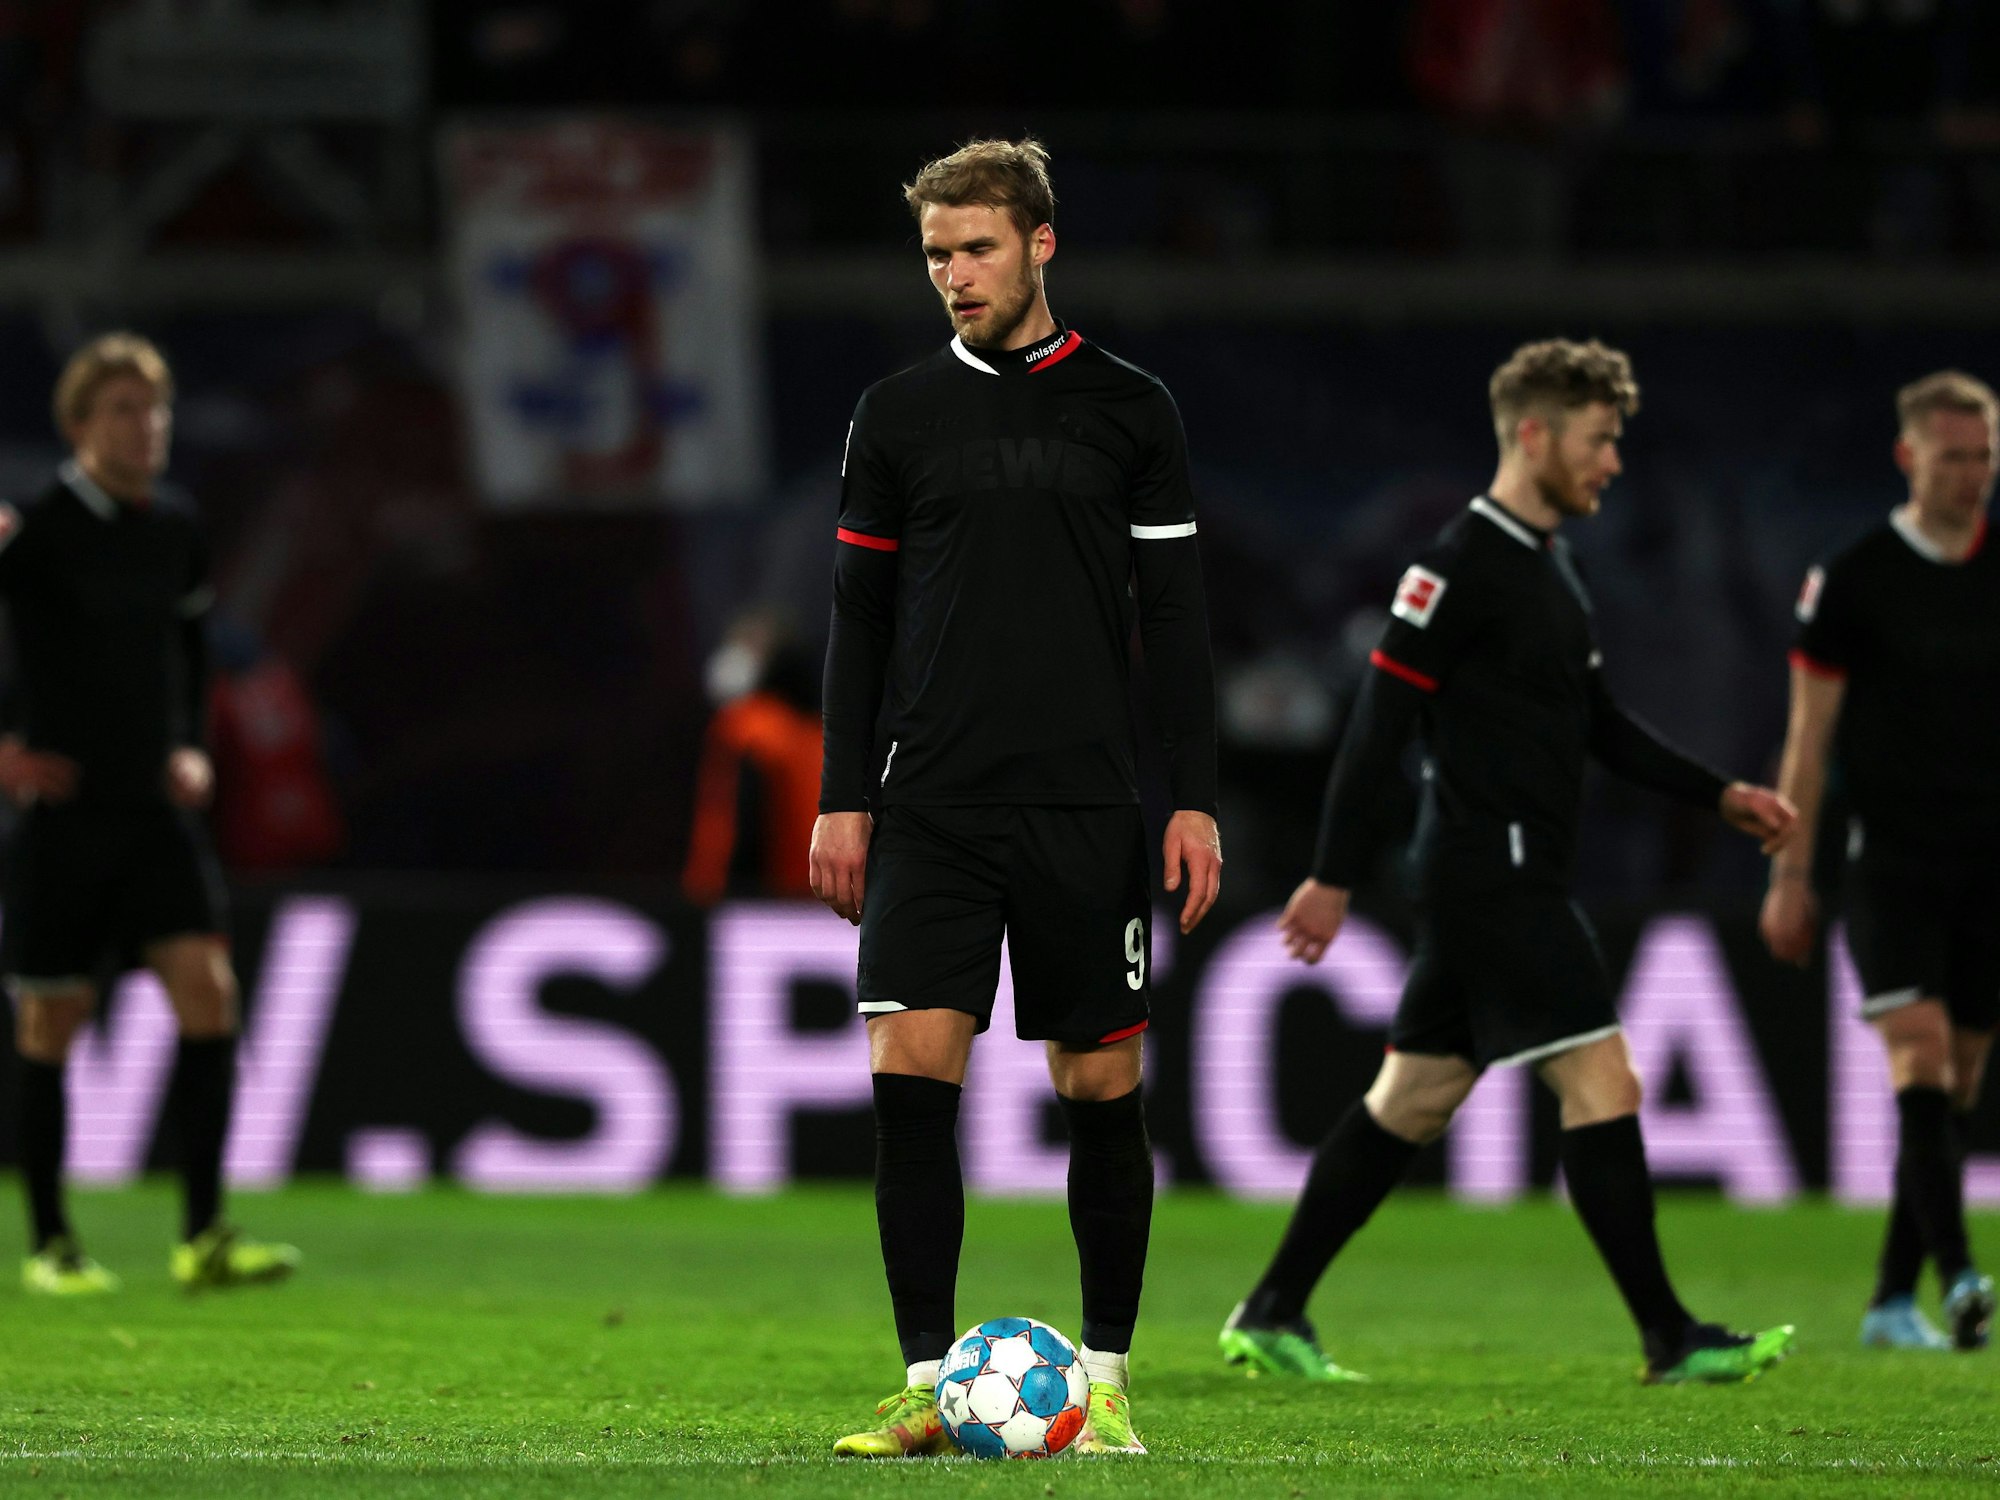 Sebastian Andersson vom 1. FC Köln mit geknickt im Spiel gegen RB Leipzig.